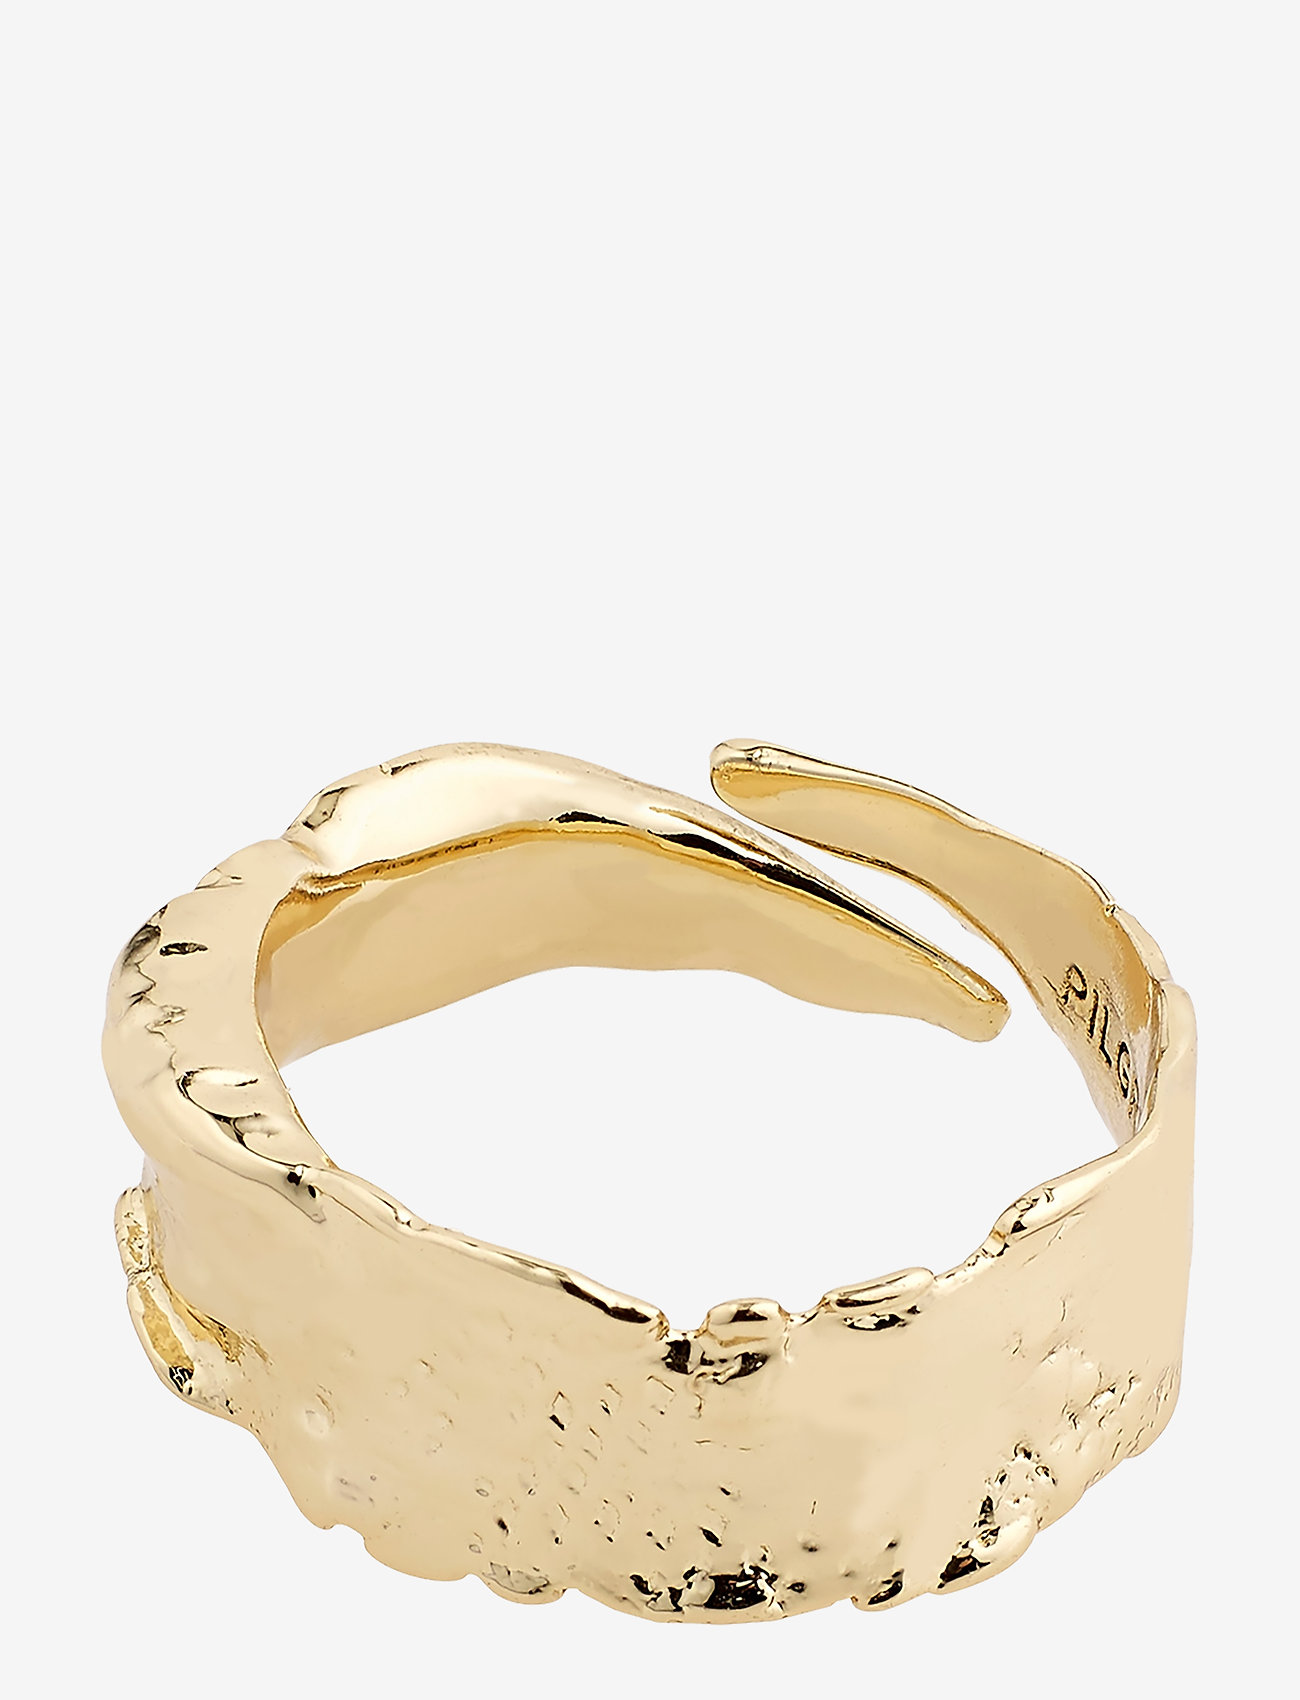 Pilgrim - Ring : Bathilda : Gold Plated - odzież imprezowa w cenach outletowych - gold plated - 0